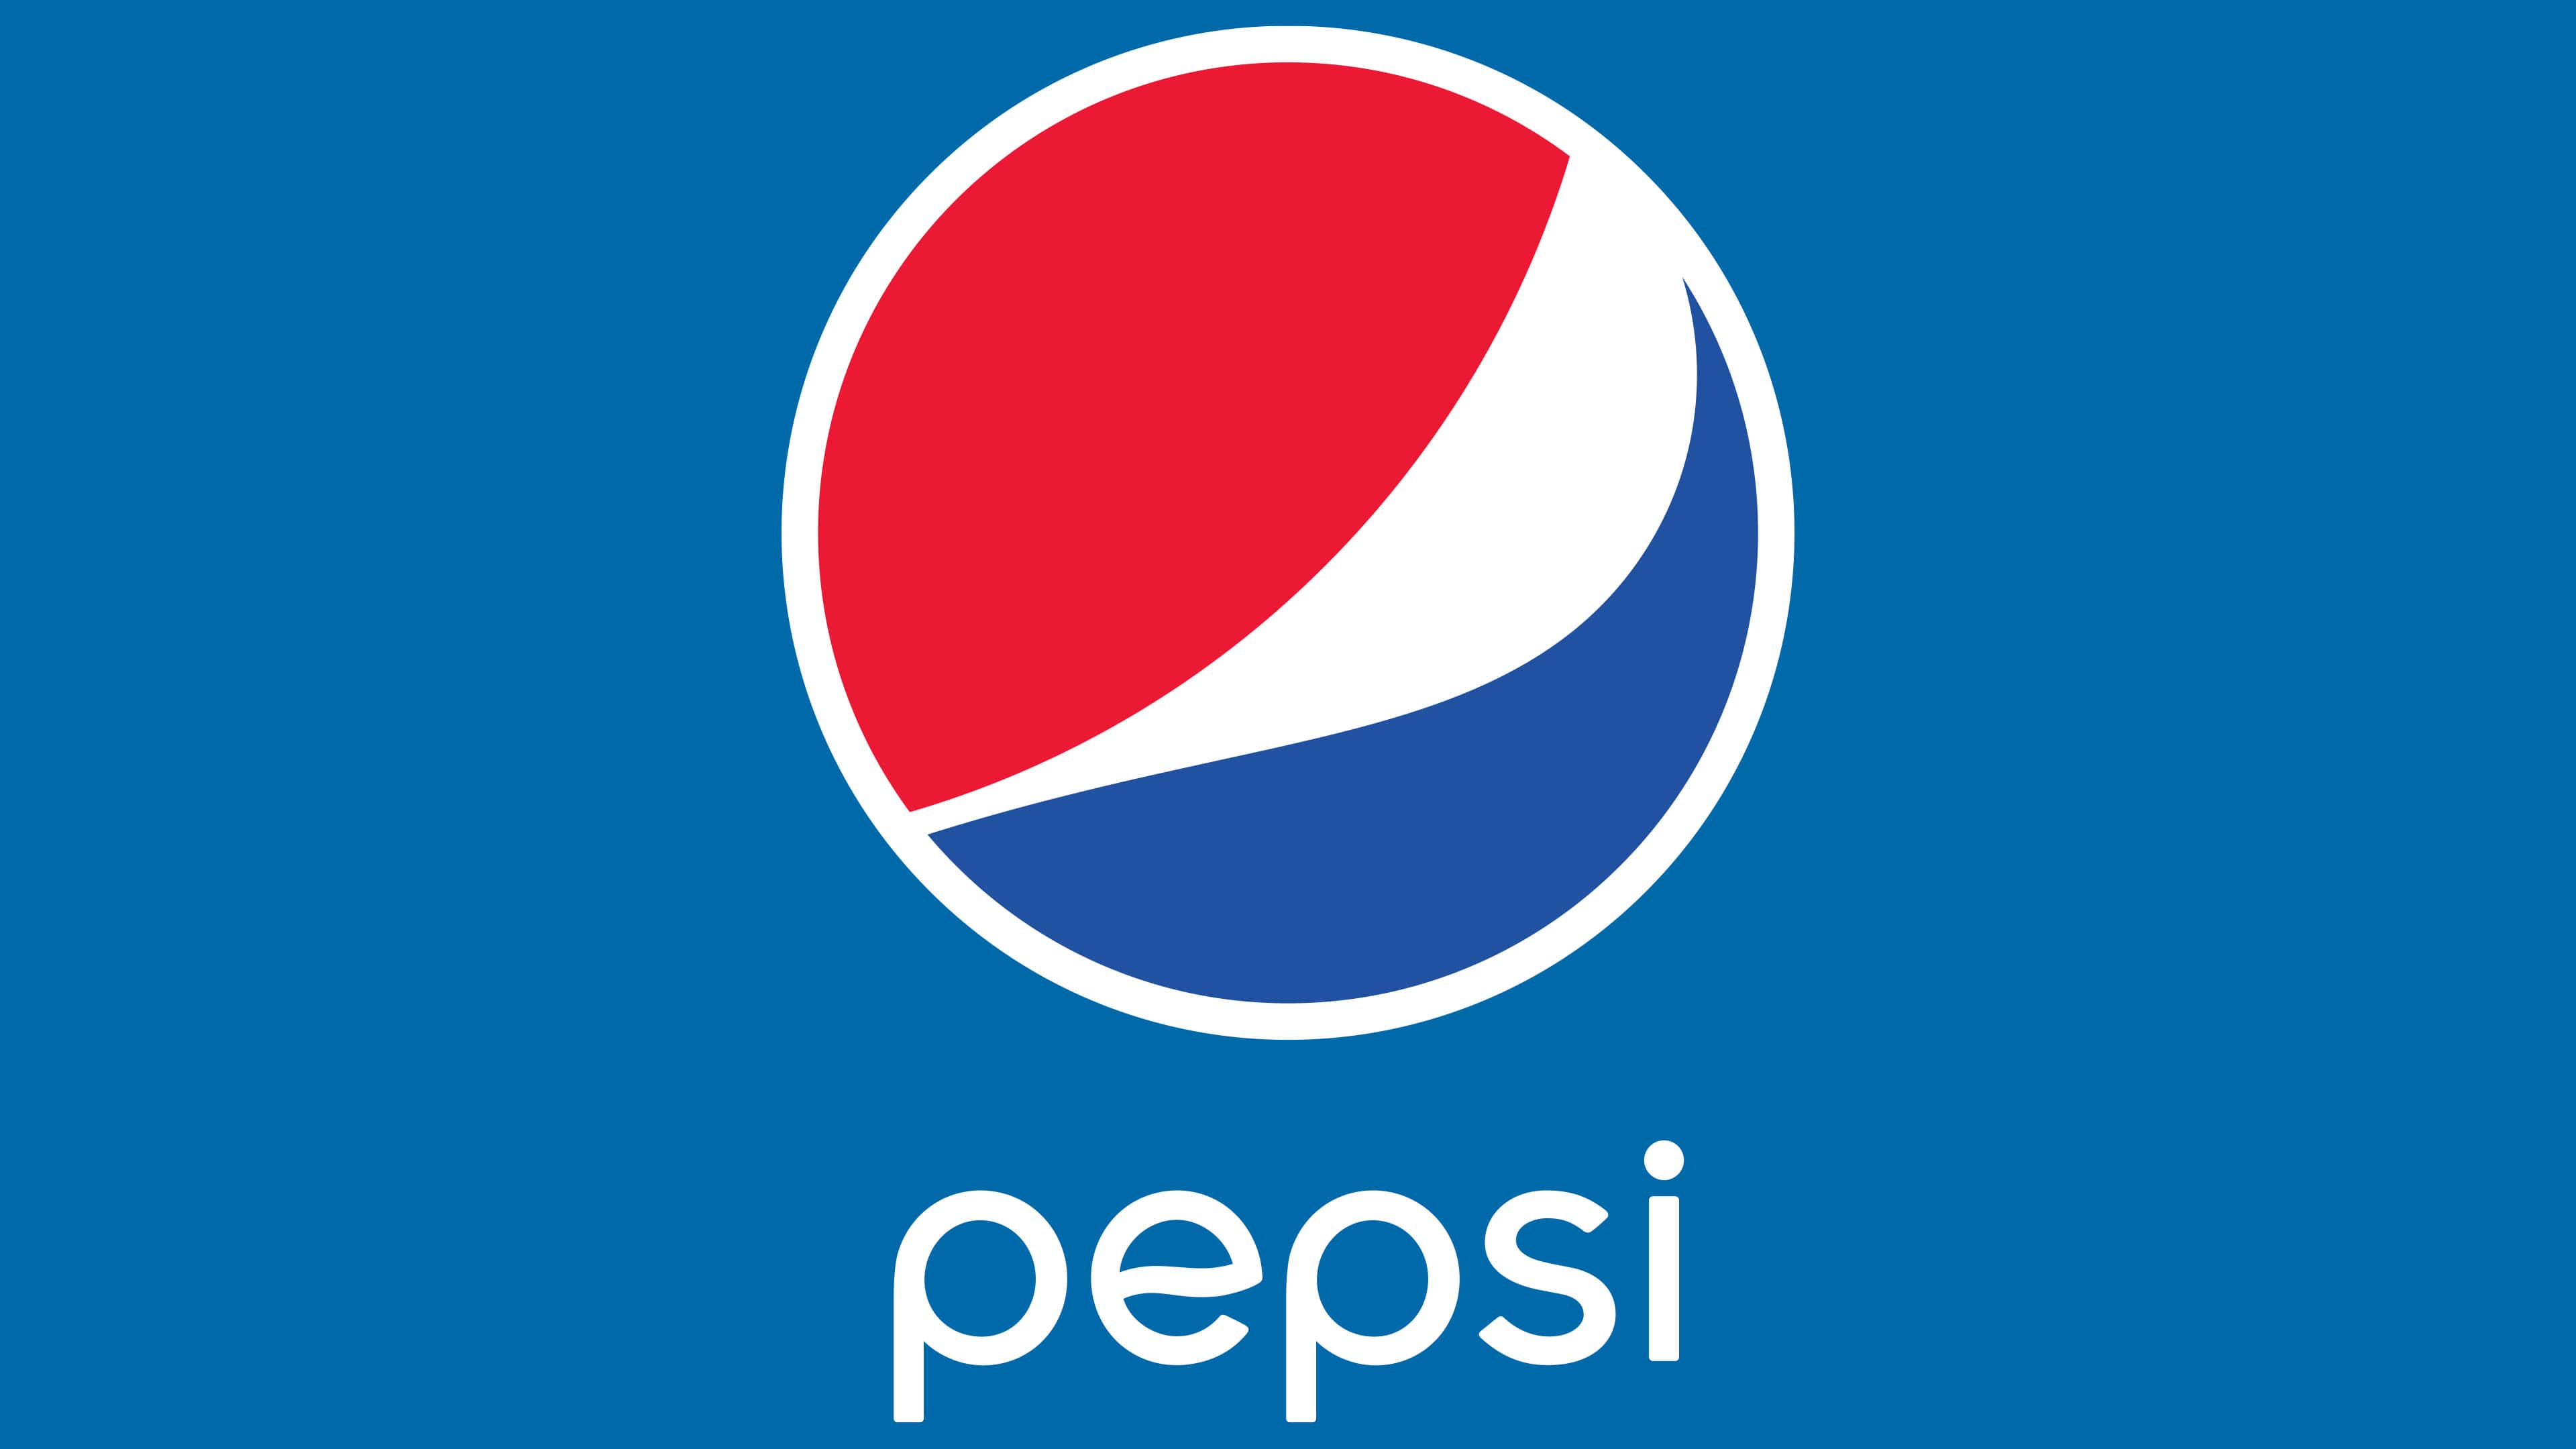 Pepsi Official Logo